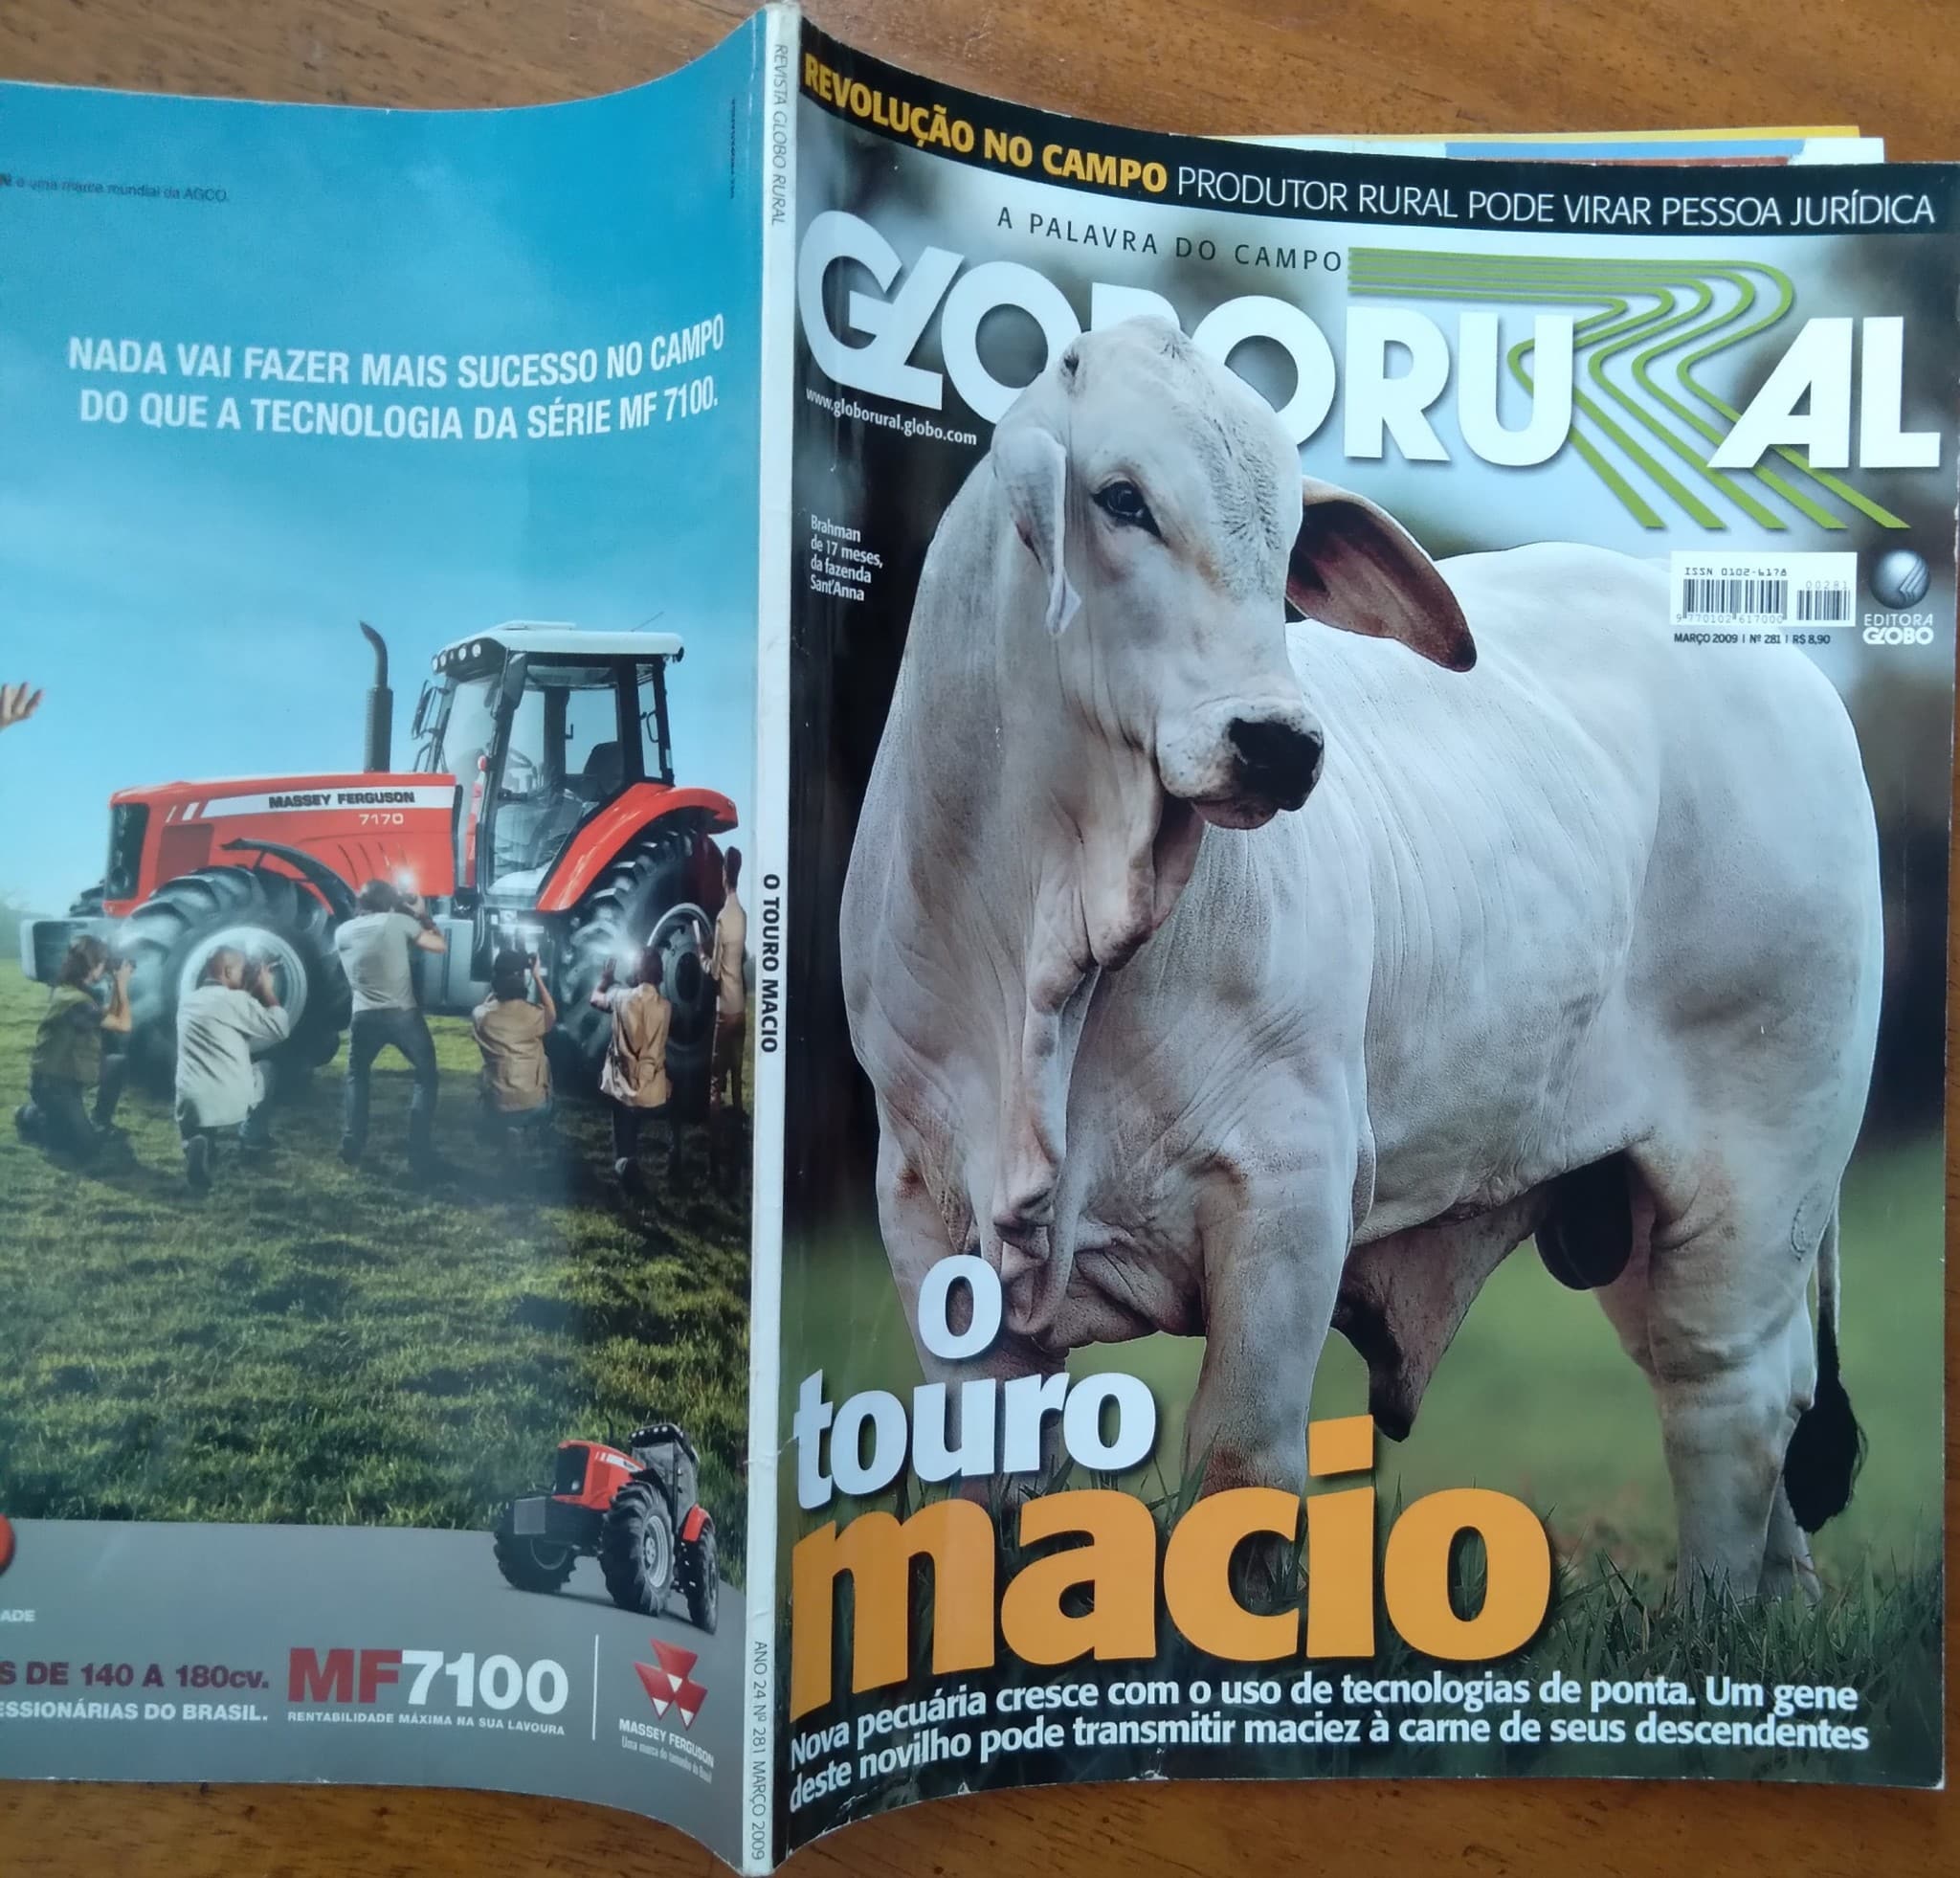 Especial GPTW é destaque na Revista Globo Rural de junho - Revista Globo  Rural